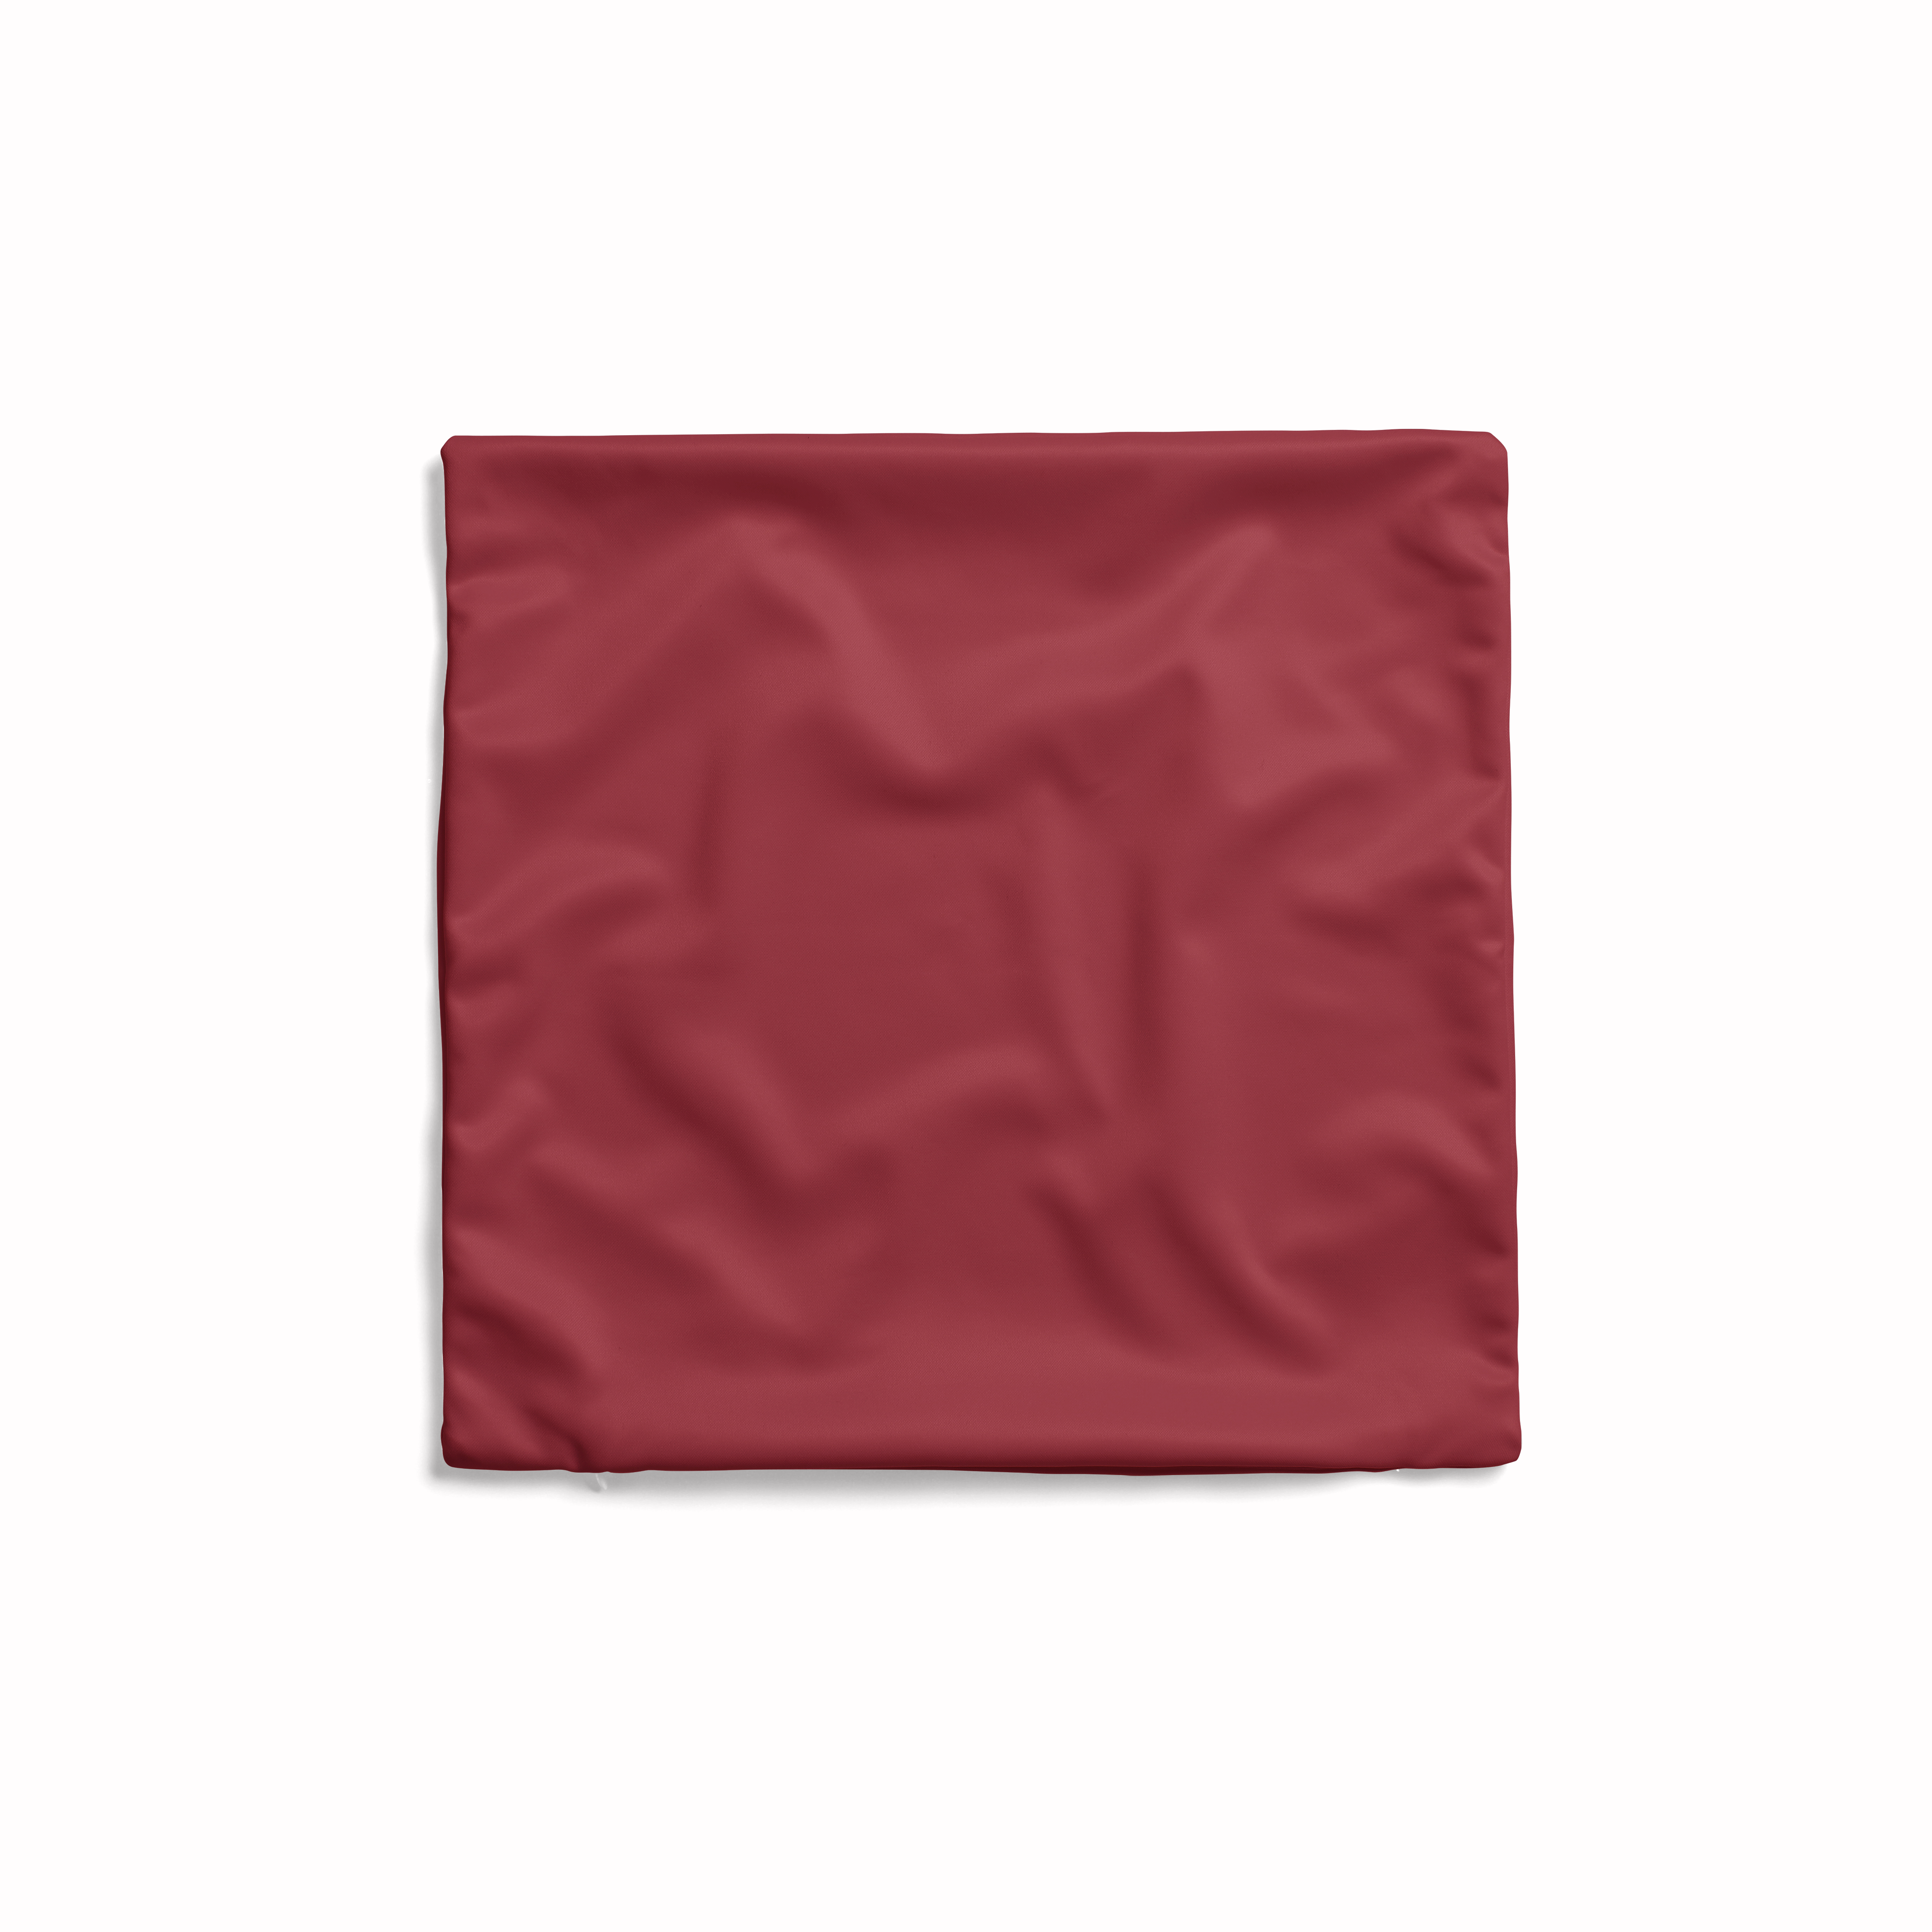 Plain Dark Red Cushion